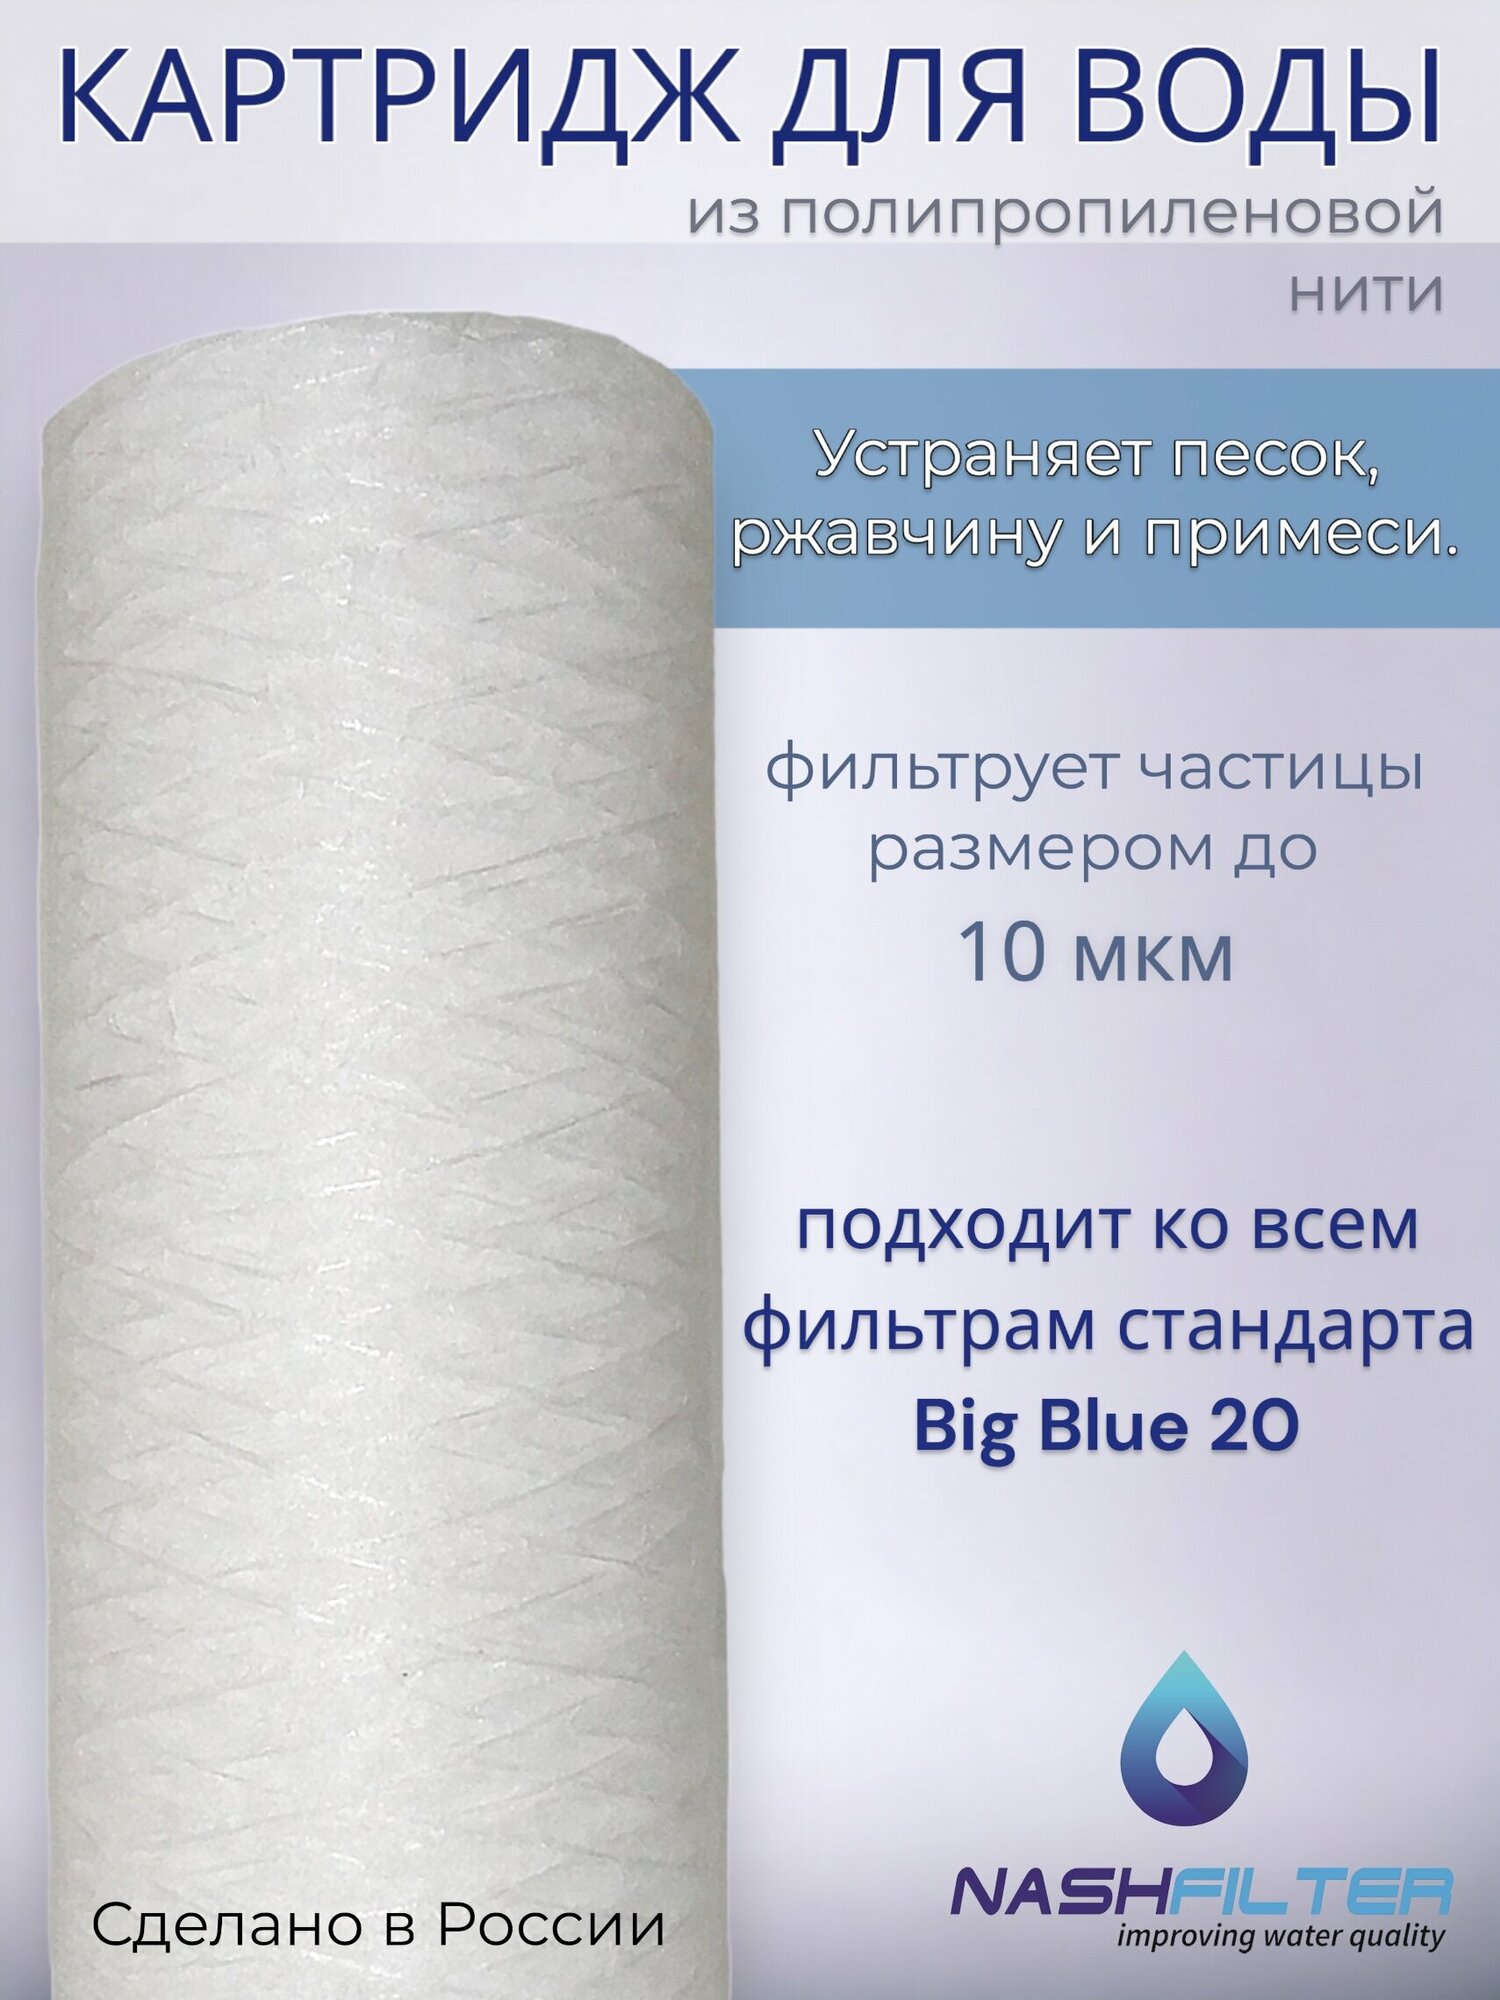 Картридж NASHFILTER для воды из полипропиленовой нити РS 20 Big Blue, 10 мкм